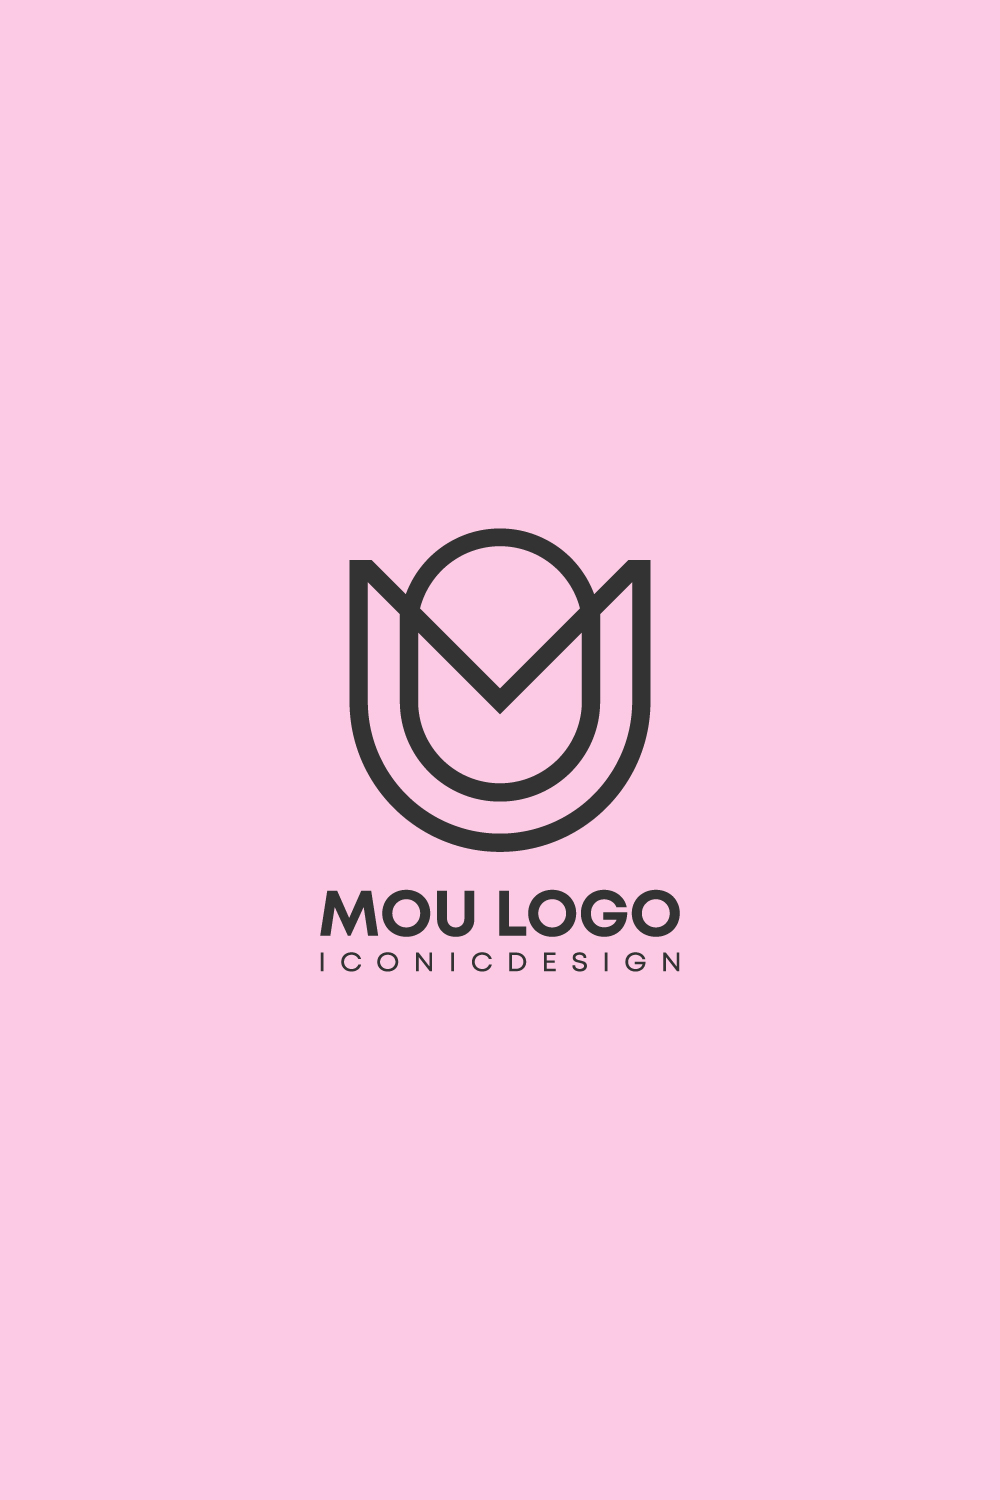 MOU logo pinterest preview image.